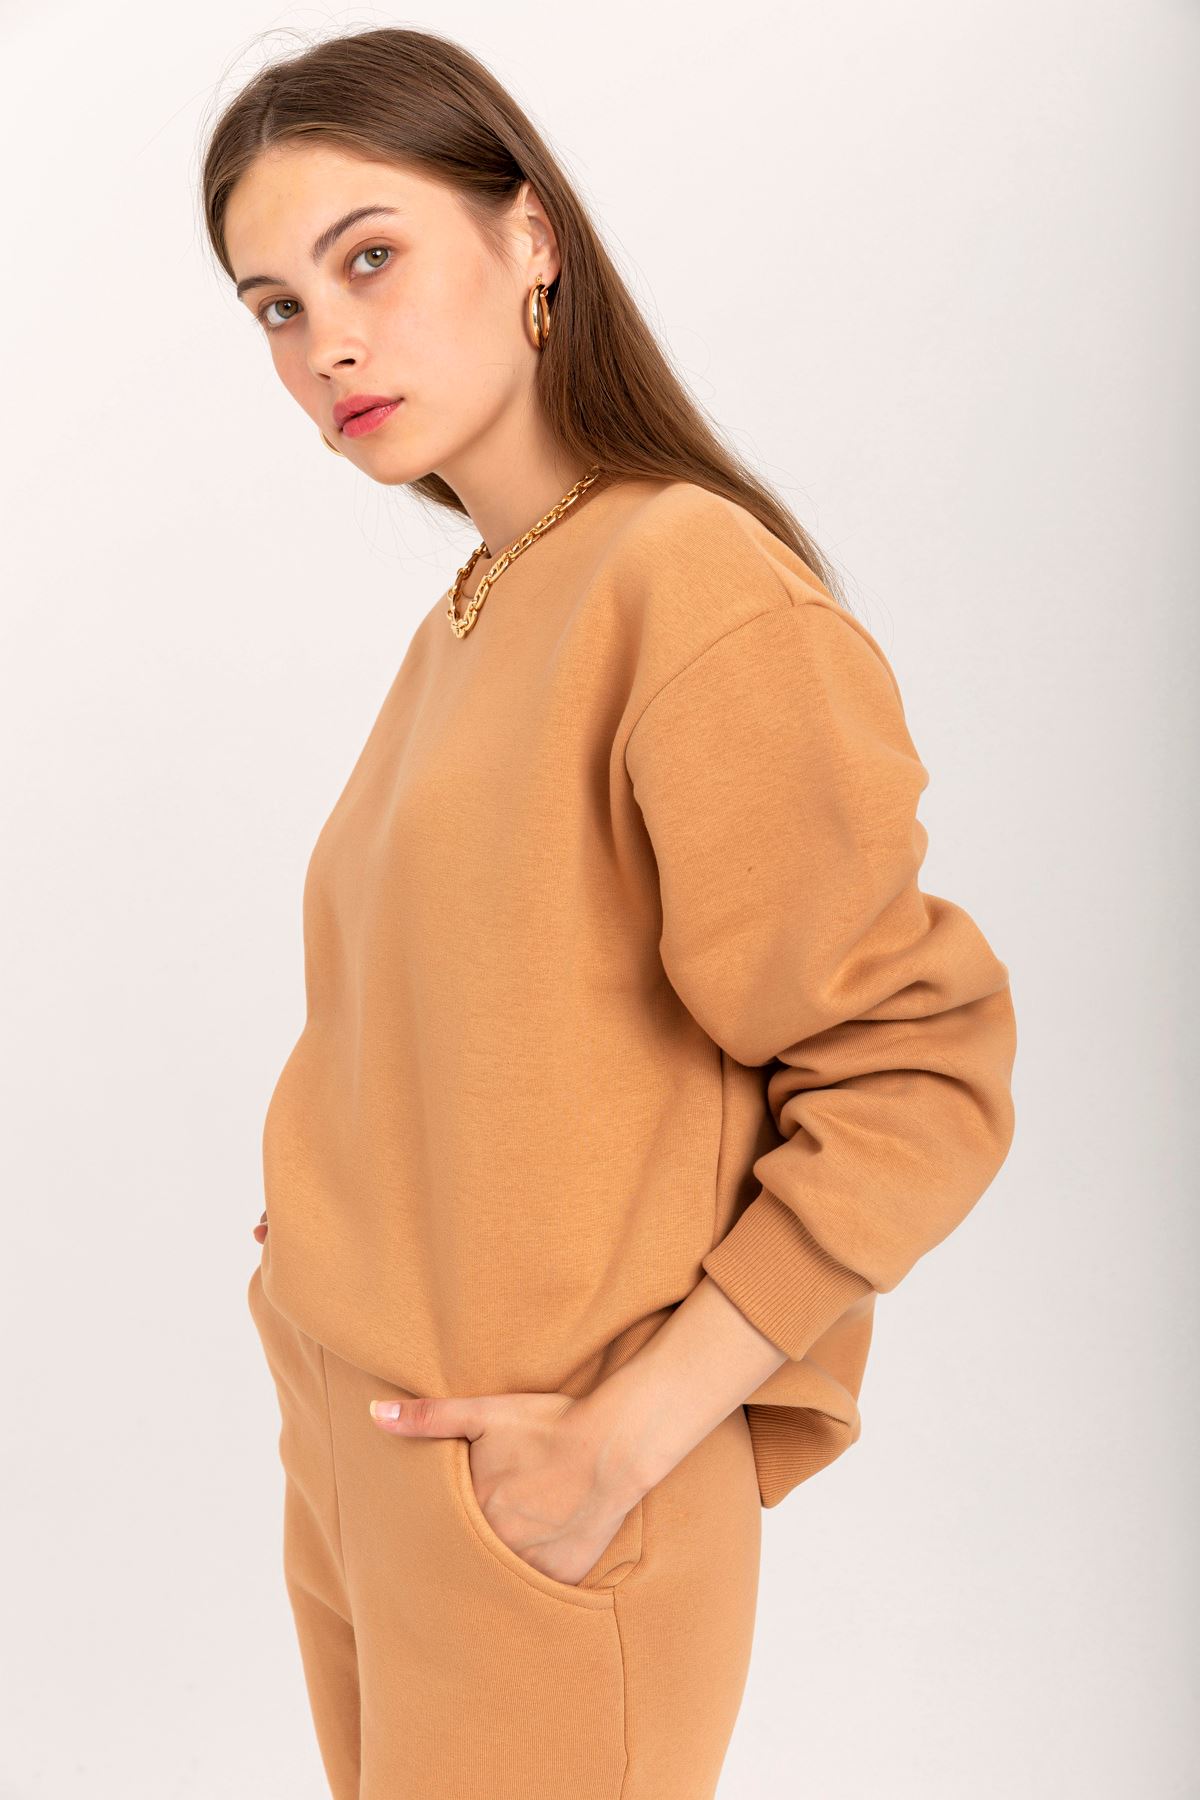 Şardonlu 3 İplik Kumaş Uzun Kol Basen Altı Boy Kadın Sweatshirt-Taba